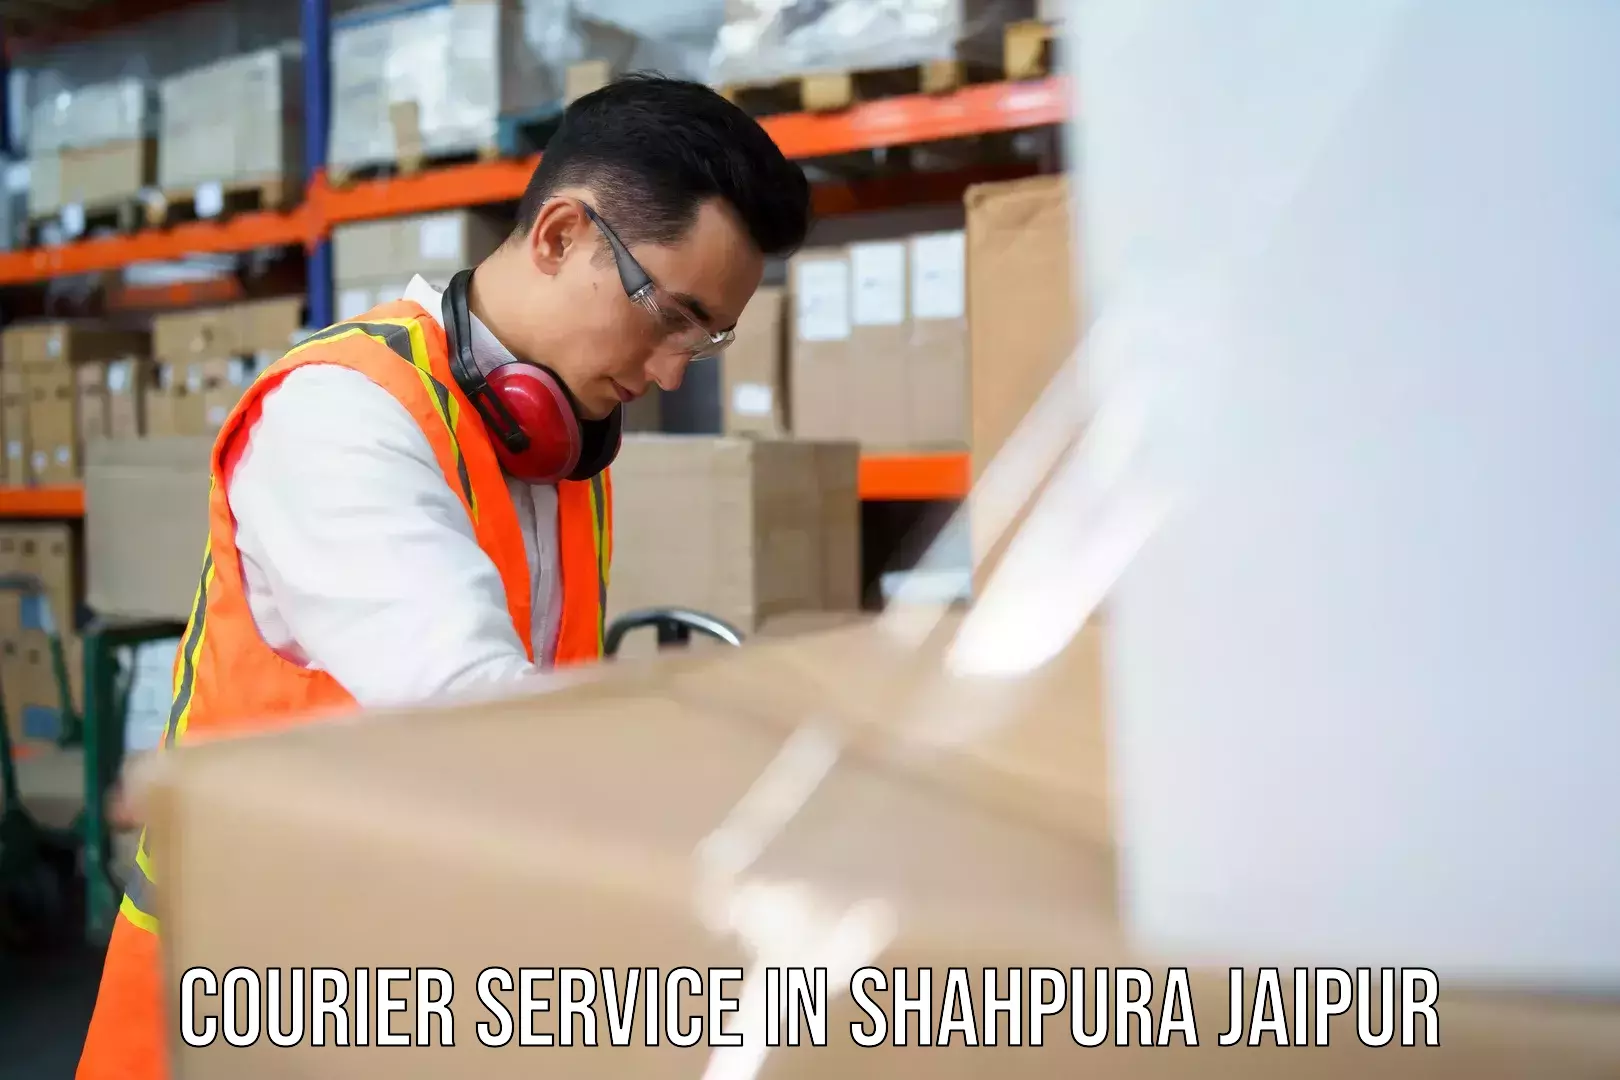 24/7 shipping services in Shahpura Jaipur